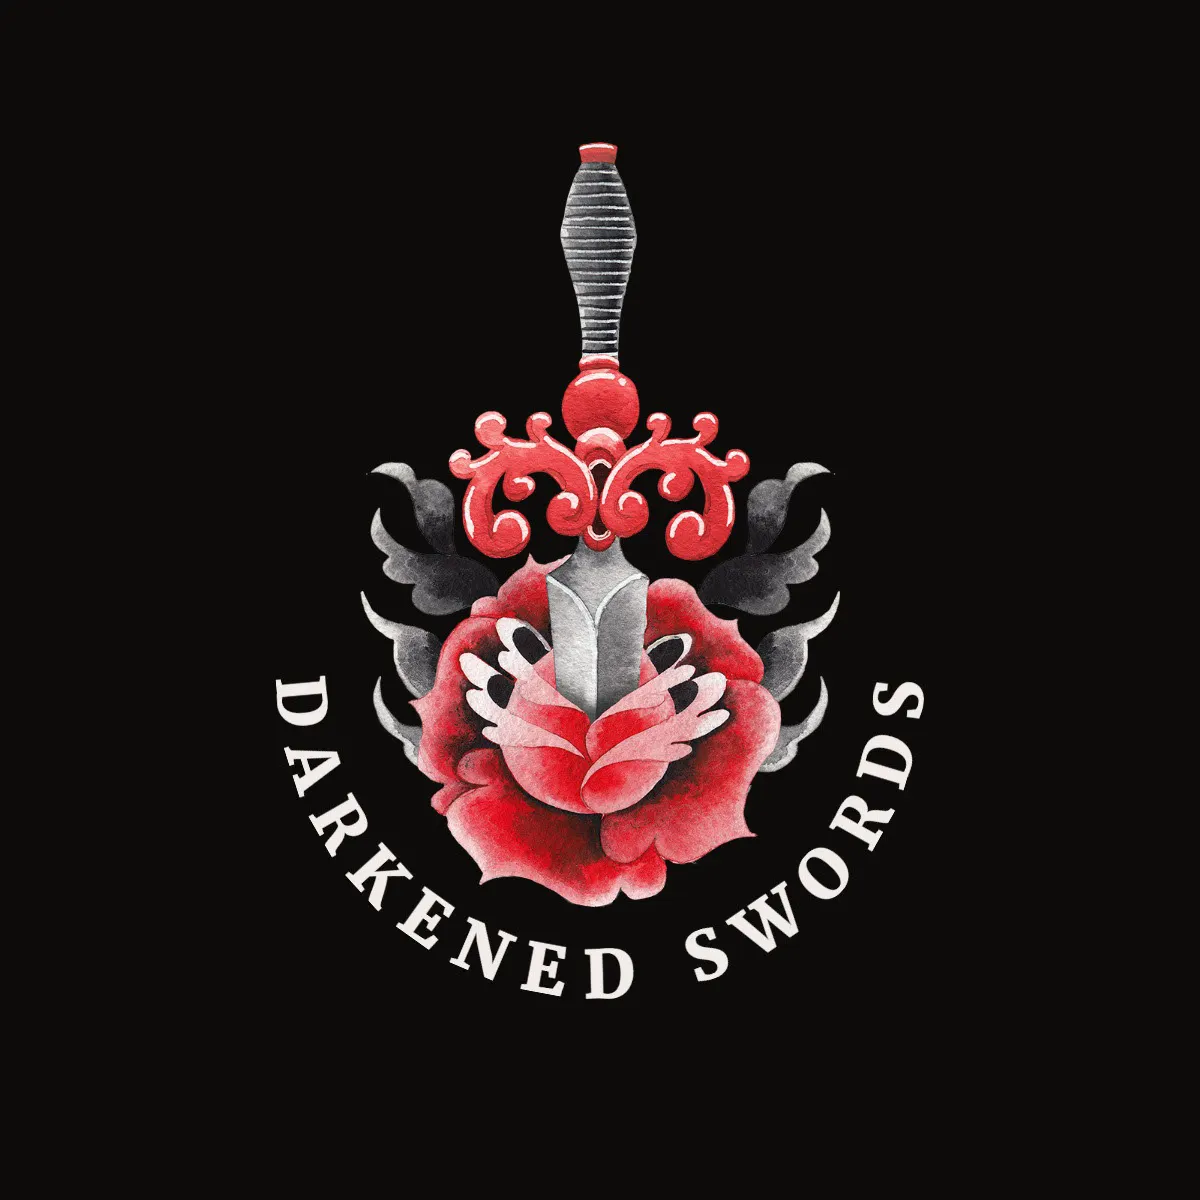 Black & Gray Rose Sword Clan Gaming Logo